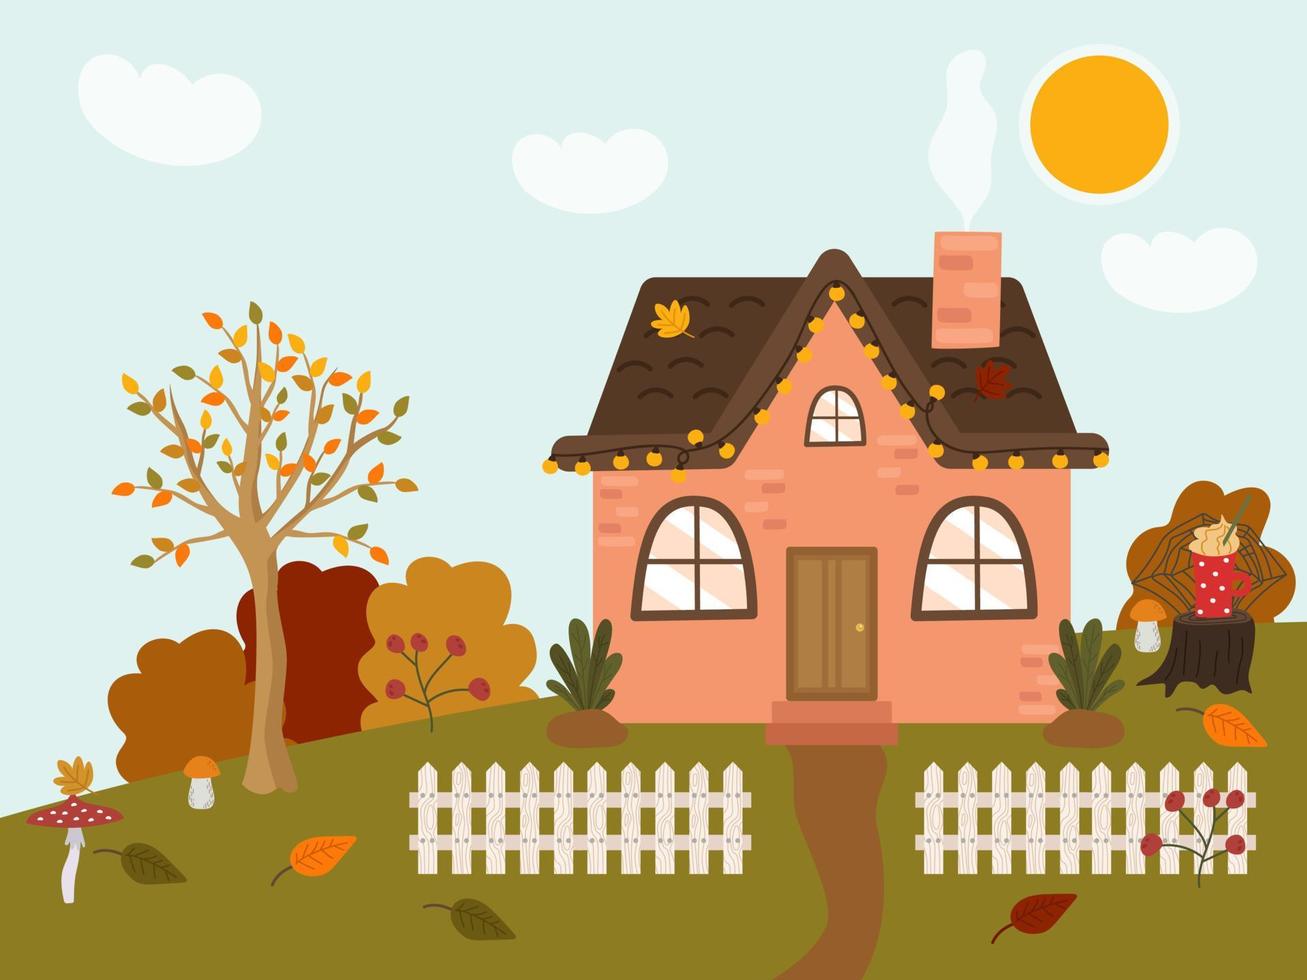 herfst knus rustiek huis met een bruin dak. schattig rustiek landschap met een wit schutting, boom, struiken, gazon. vector illustratie van een vallend dag buiten de stad.